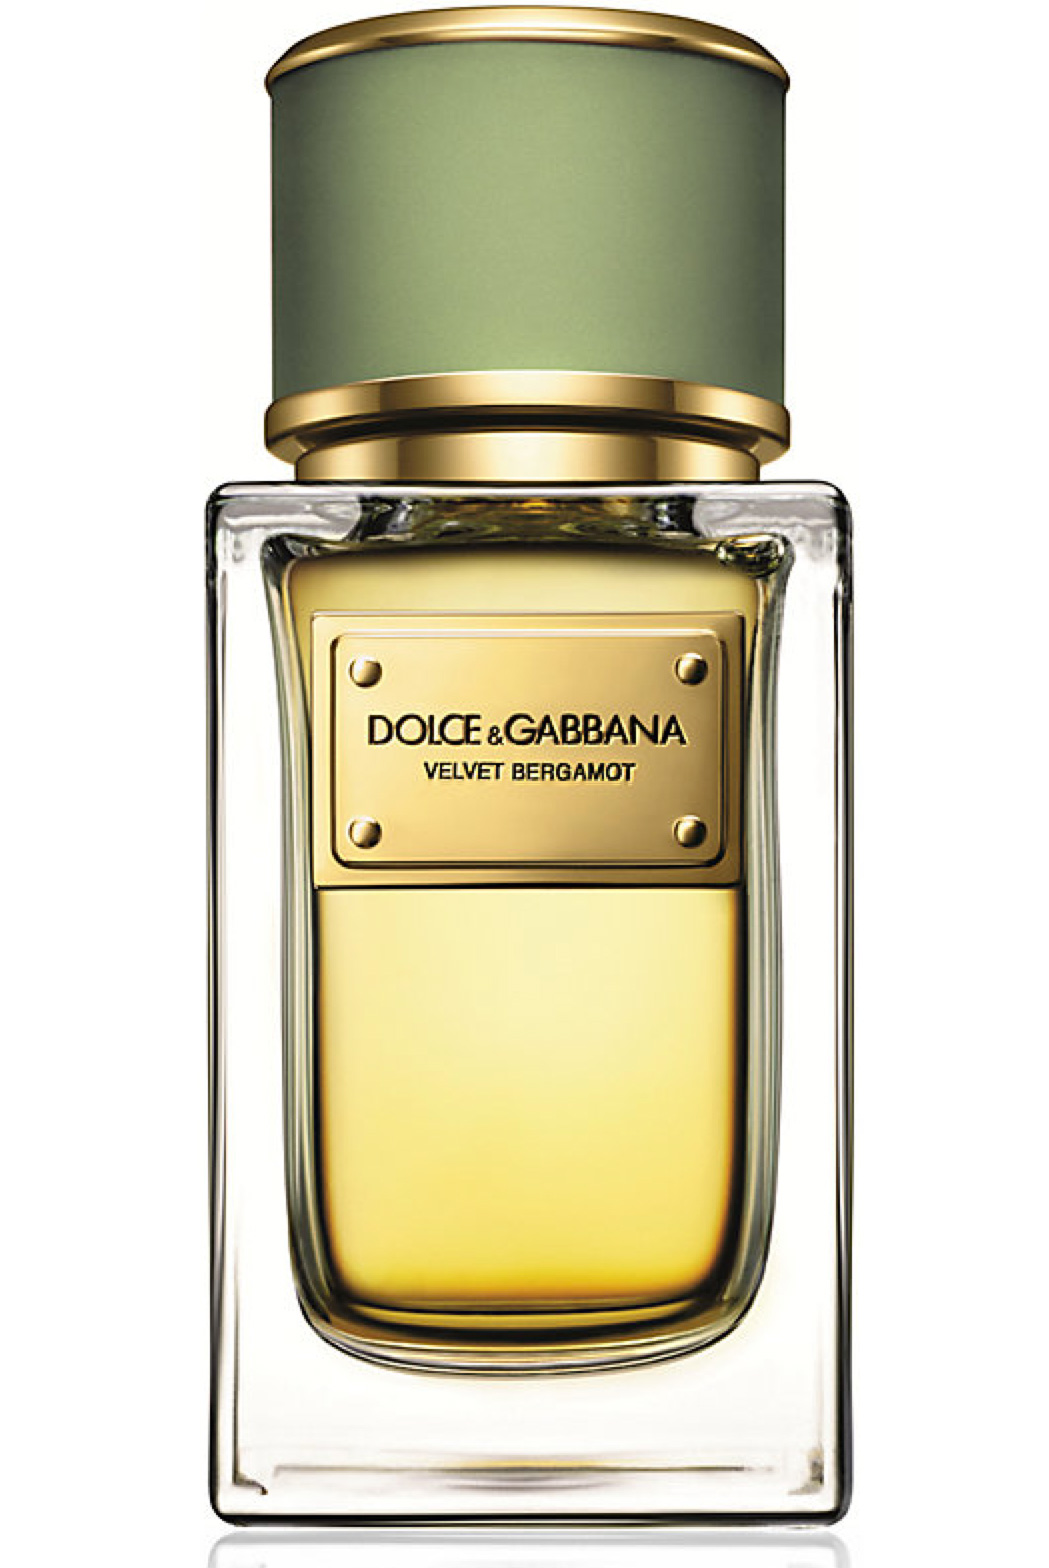 Velvet Bergamot Dolce&Gabbana cologne - a new fragrance for men 2014